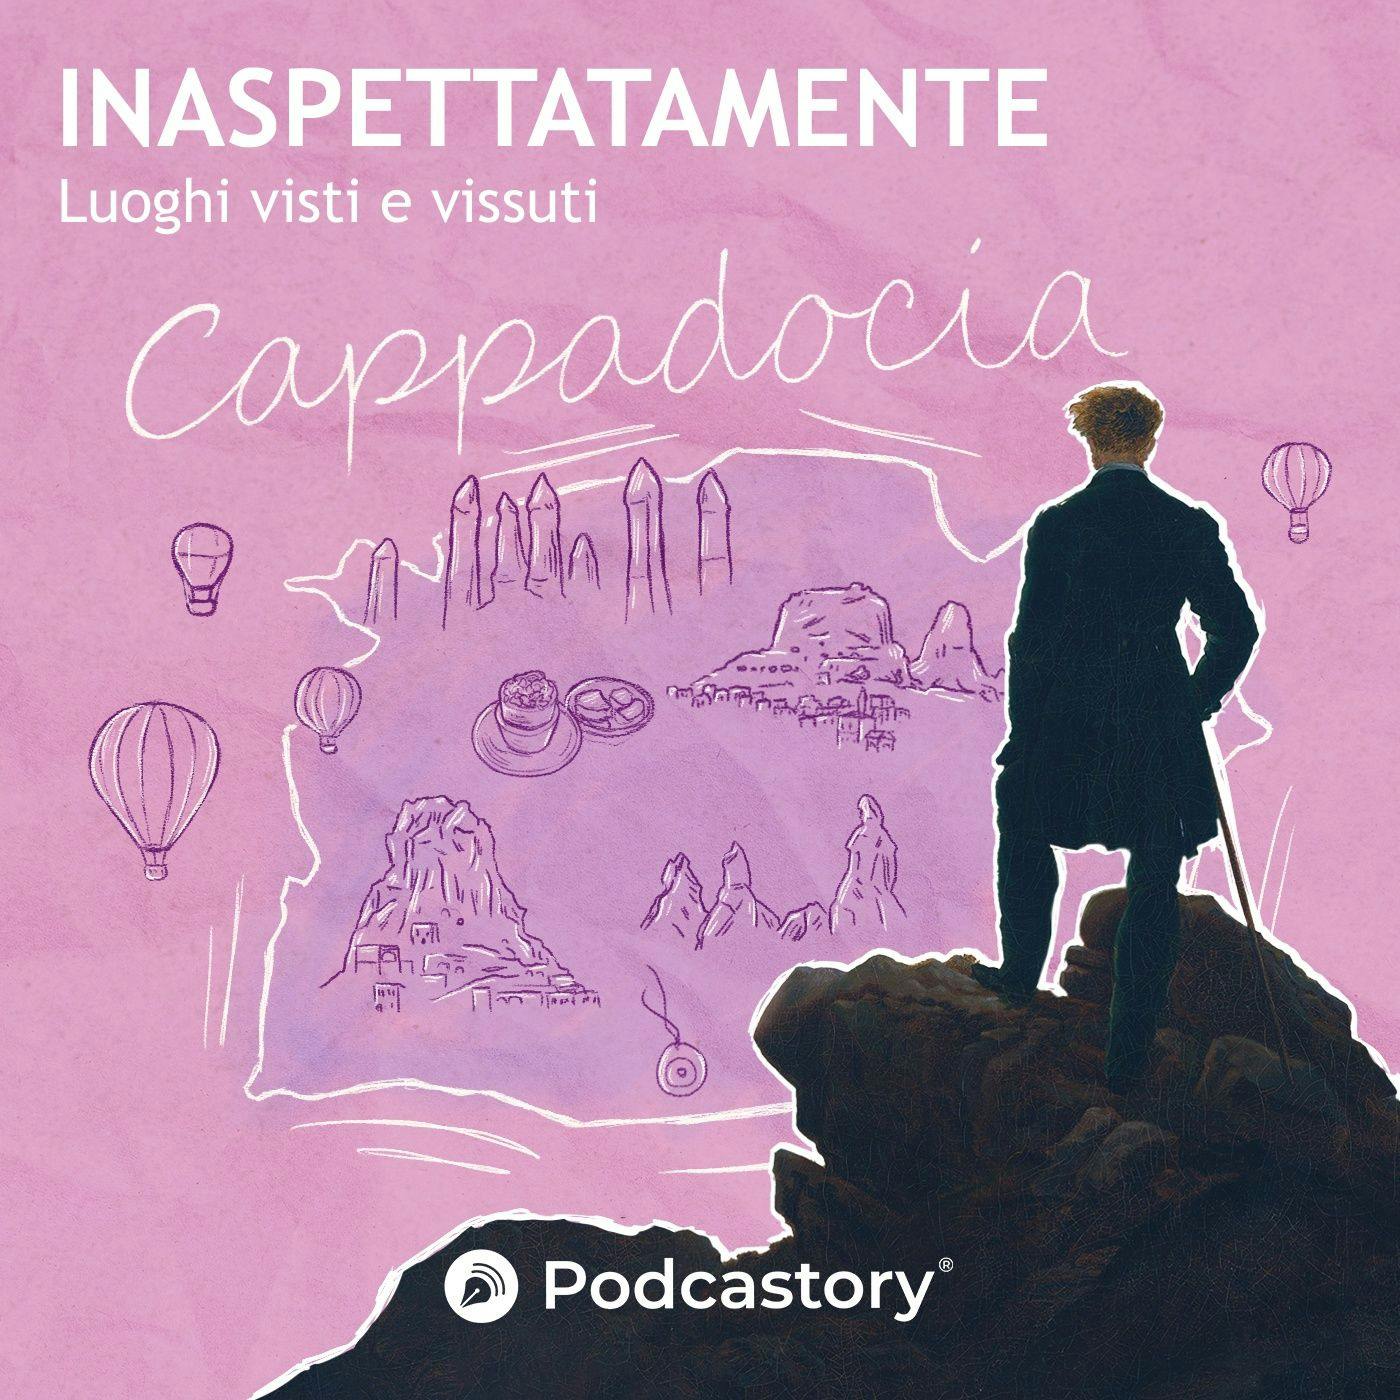 EP. 08 – Cappadocia